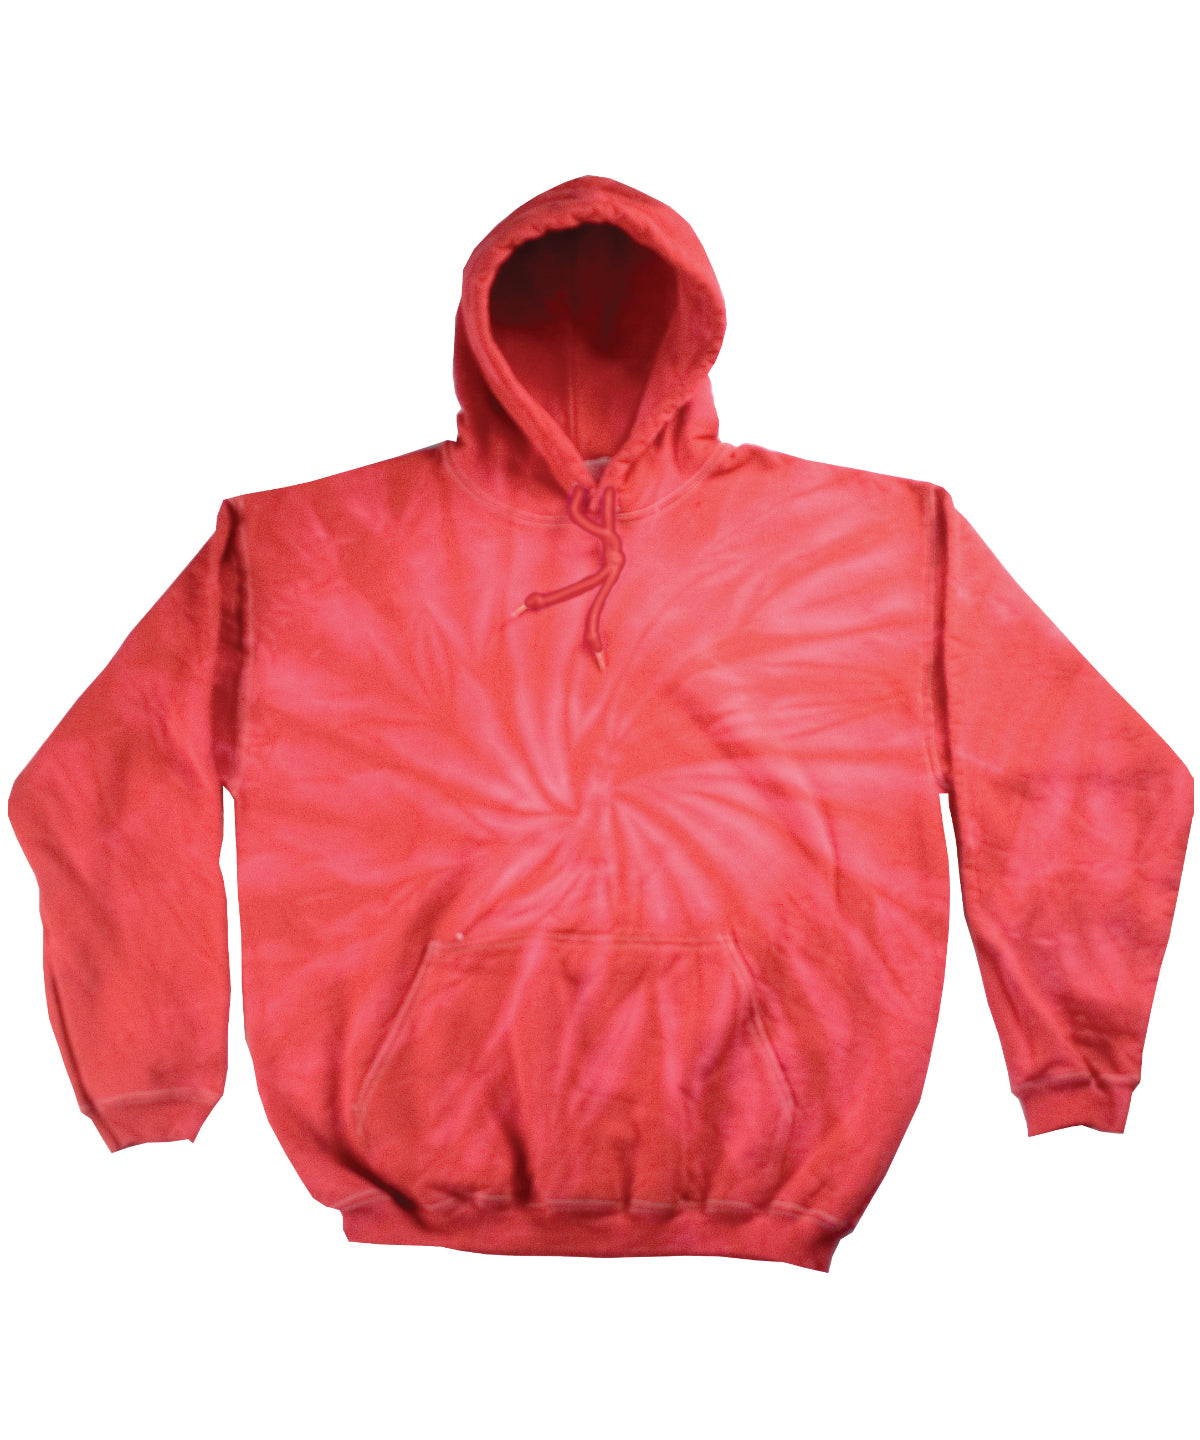 Personalised Hoodies - Tie-Dye Colortone Tonal spider hoodie